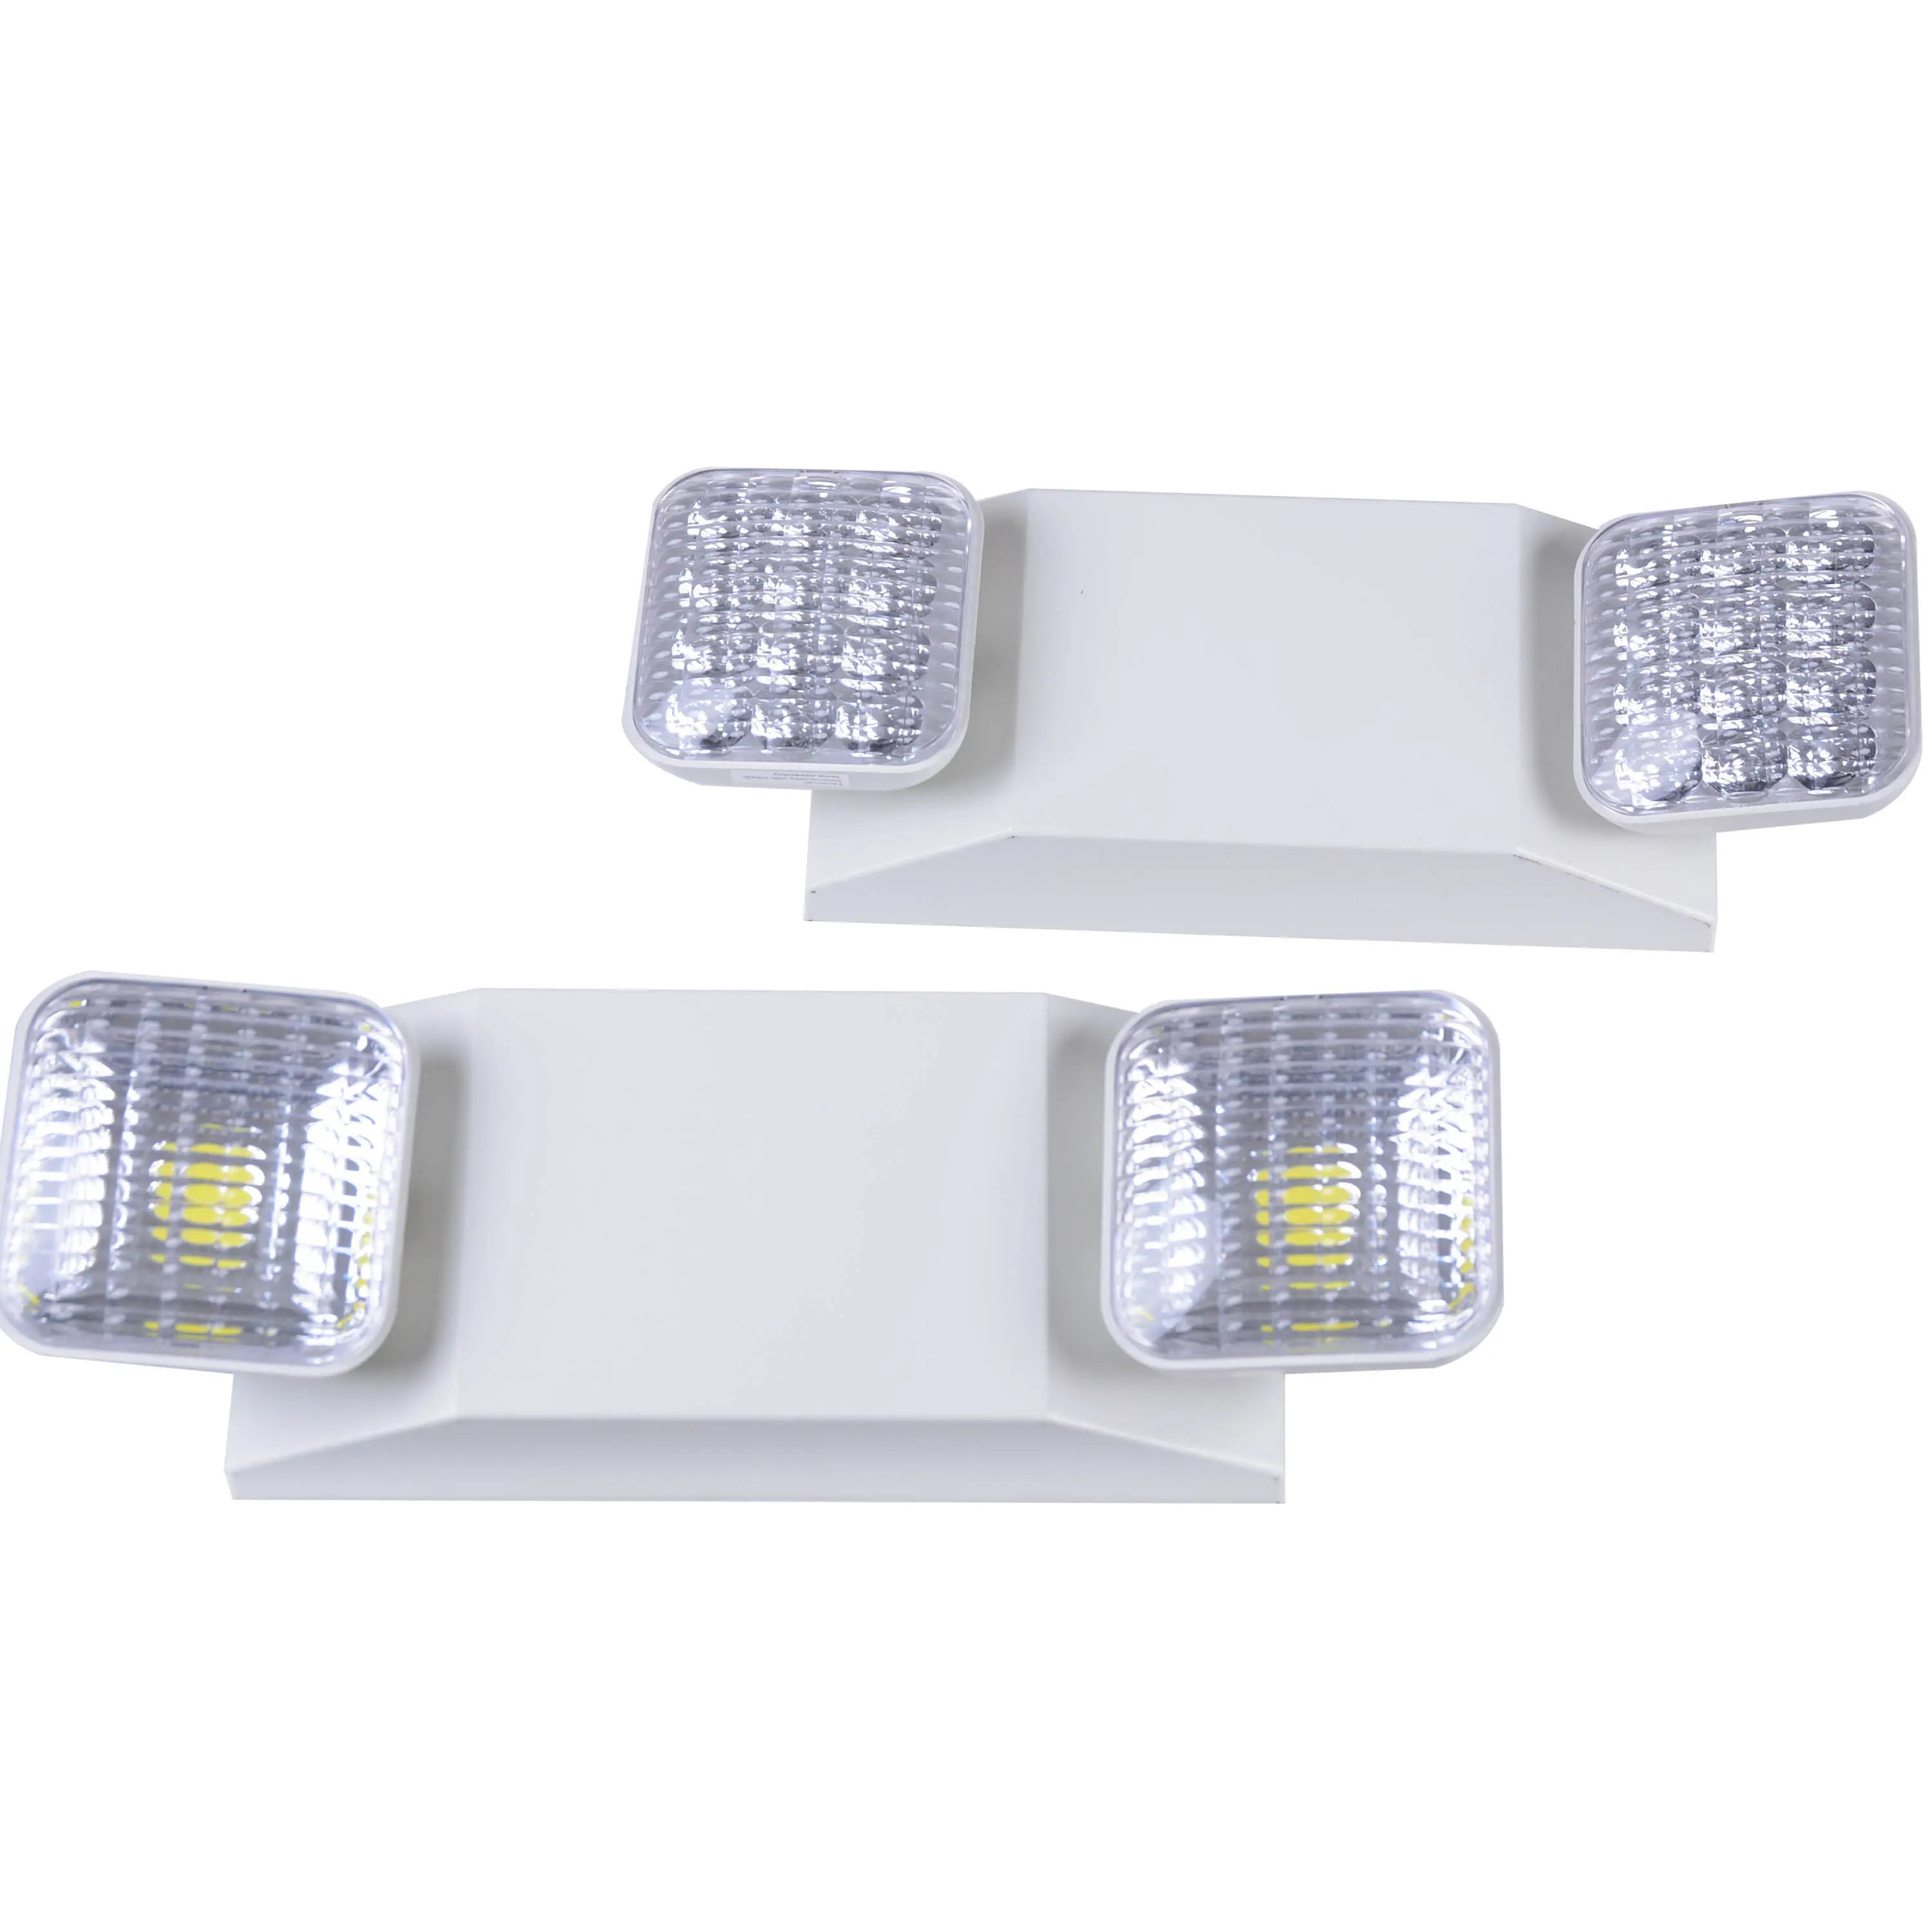 Acil durum LED ışığı çift kafa acil durum ışığı UI listelenen led şarj edilebilir acil durum ışığı